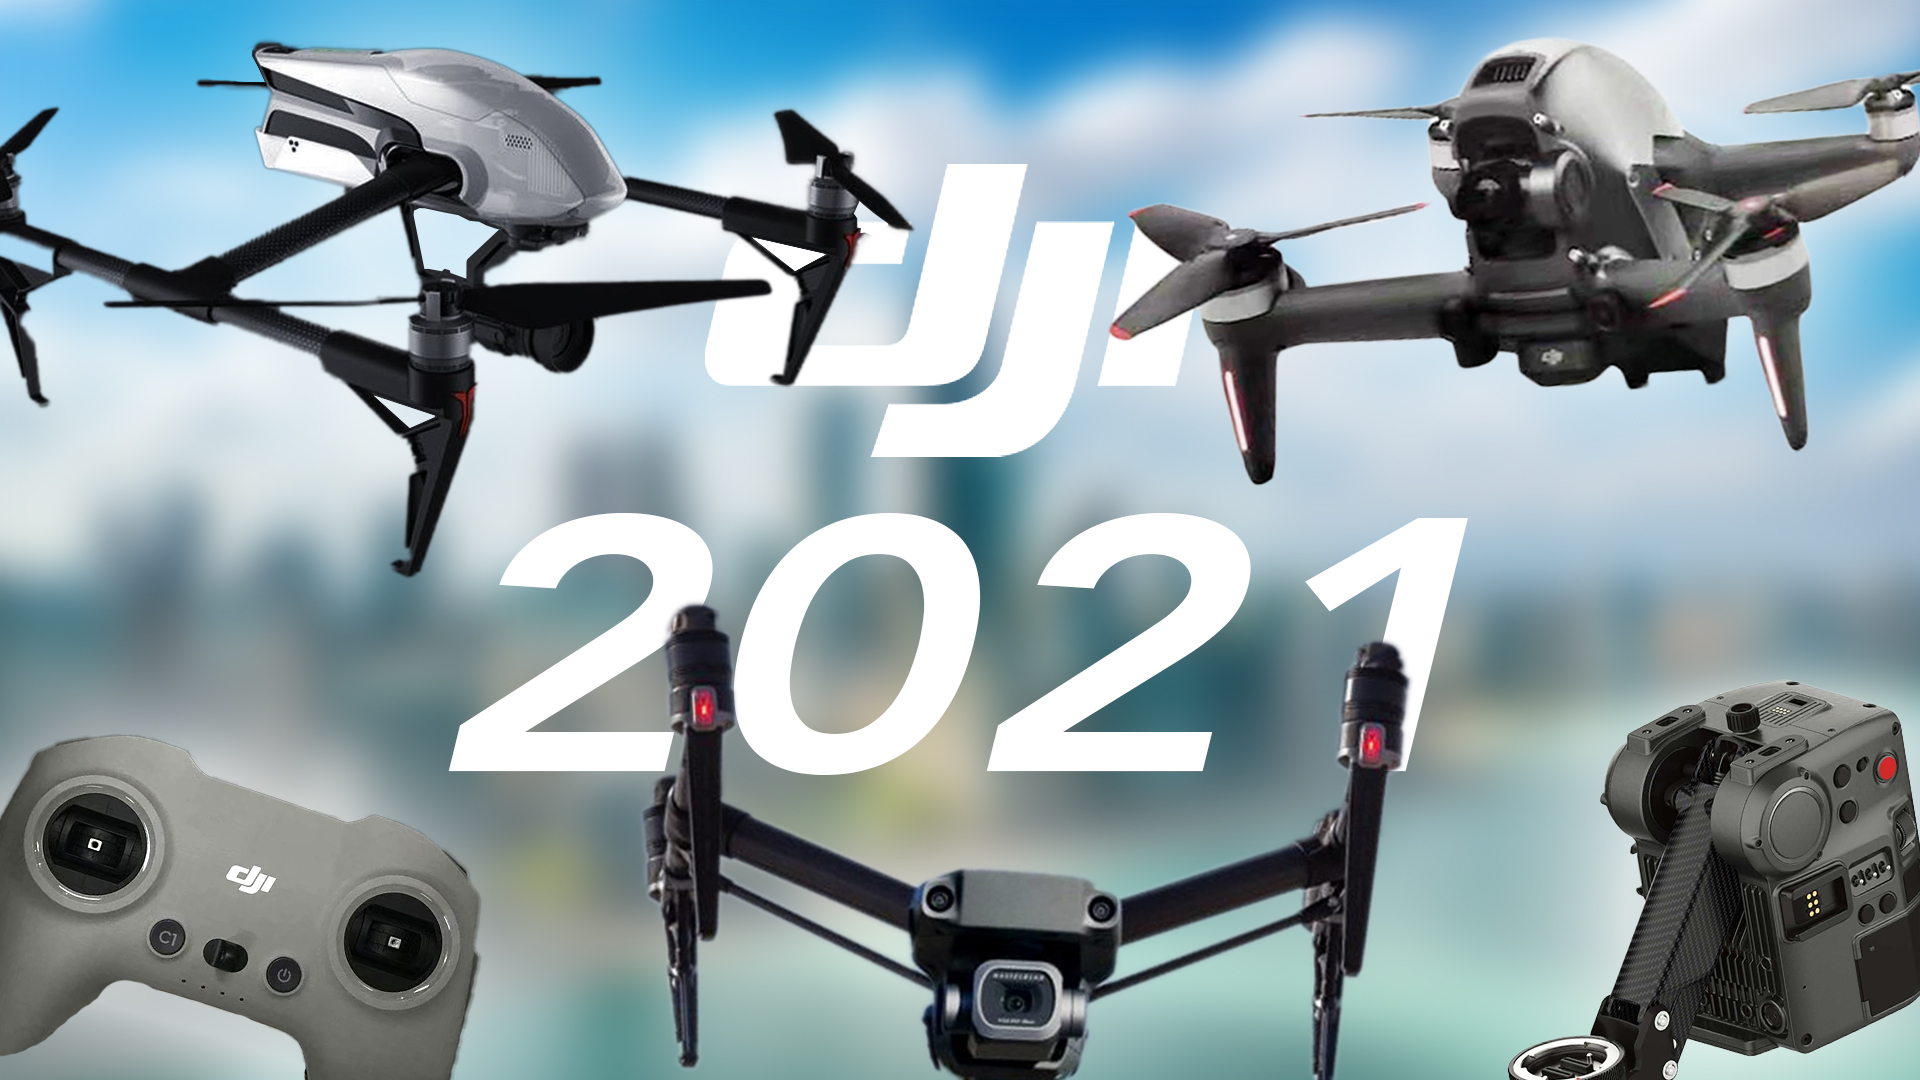 dji fpv drone 2 release date